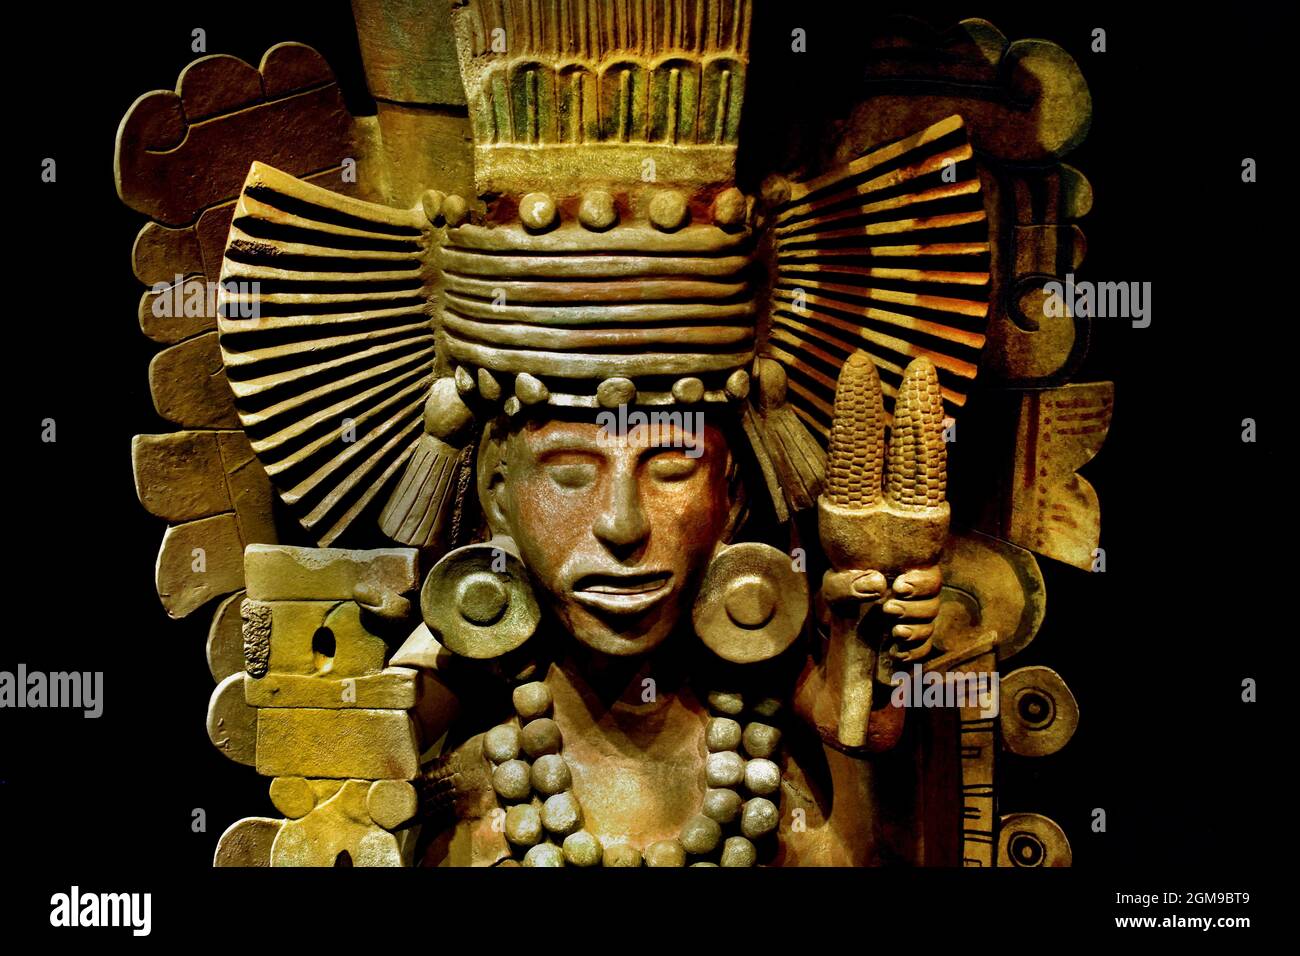 Brazier Xilonen, questa scultura che rappresenta la dea Xilonen, porta nelle sue mani un chicahuaztli , simbolo di fertilità, E un paio di spighe di mais .Museo Nacional de Antropolica Città del Messico Aztec ( gli Aztechi, la cultura mesoamericana, Messico centrale dal 1300 al 1521 (XIV-XVI secolo), Impero Azteco, Tenochtitlan, città-stato della Mexica , Tenochca, Texcoco, Tlacopan, ) Foto Stock